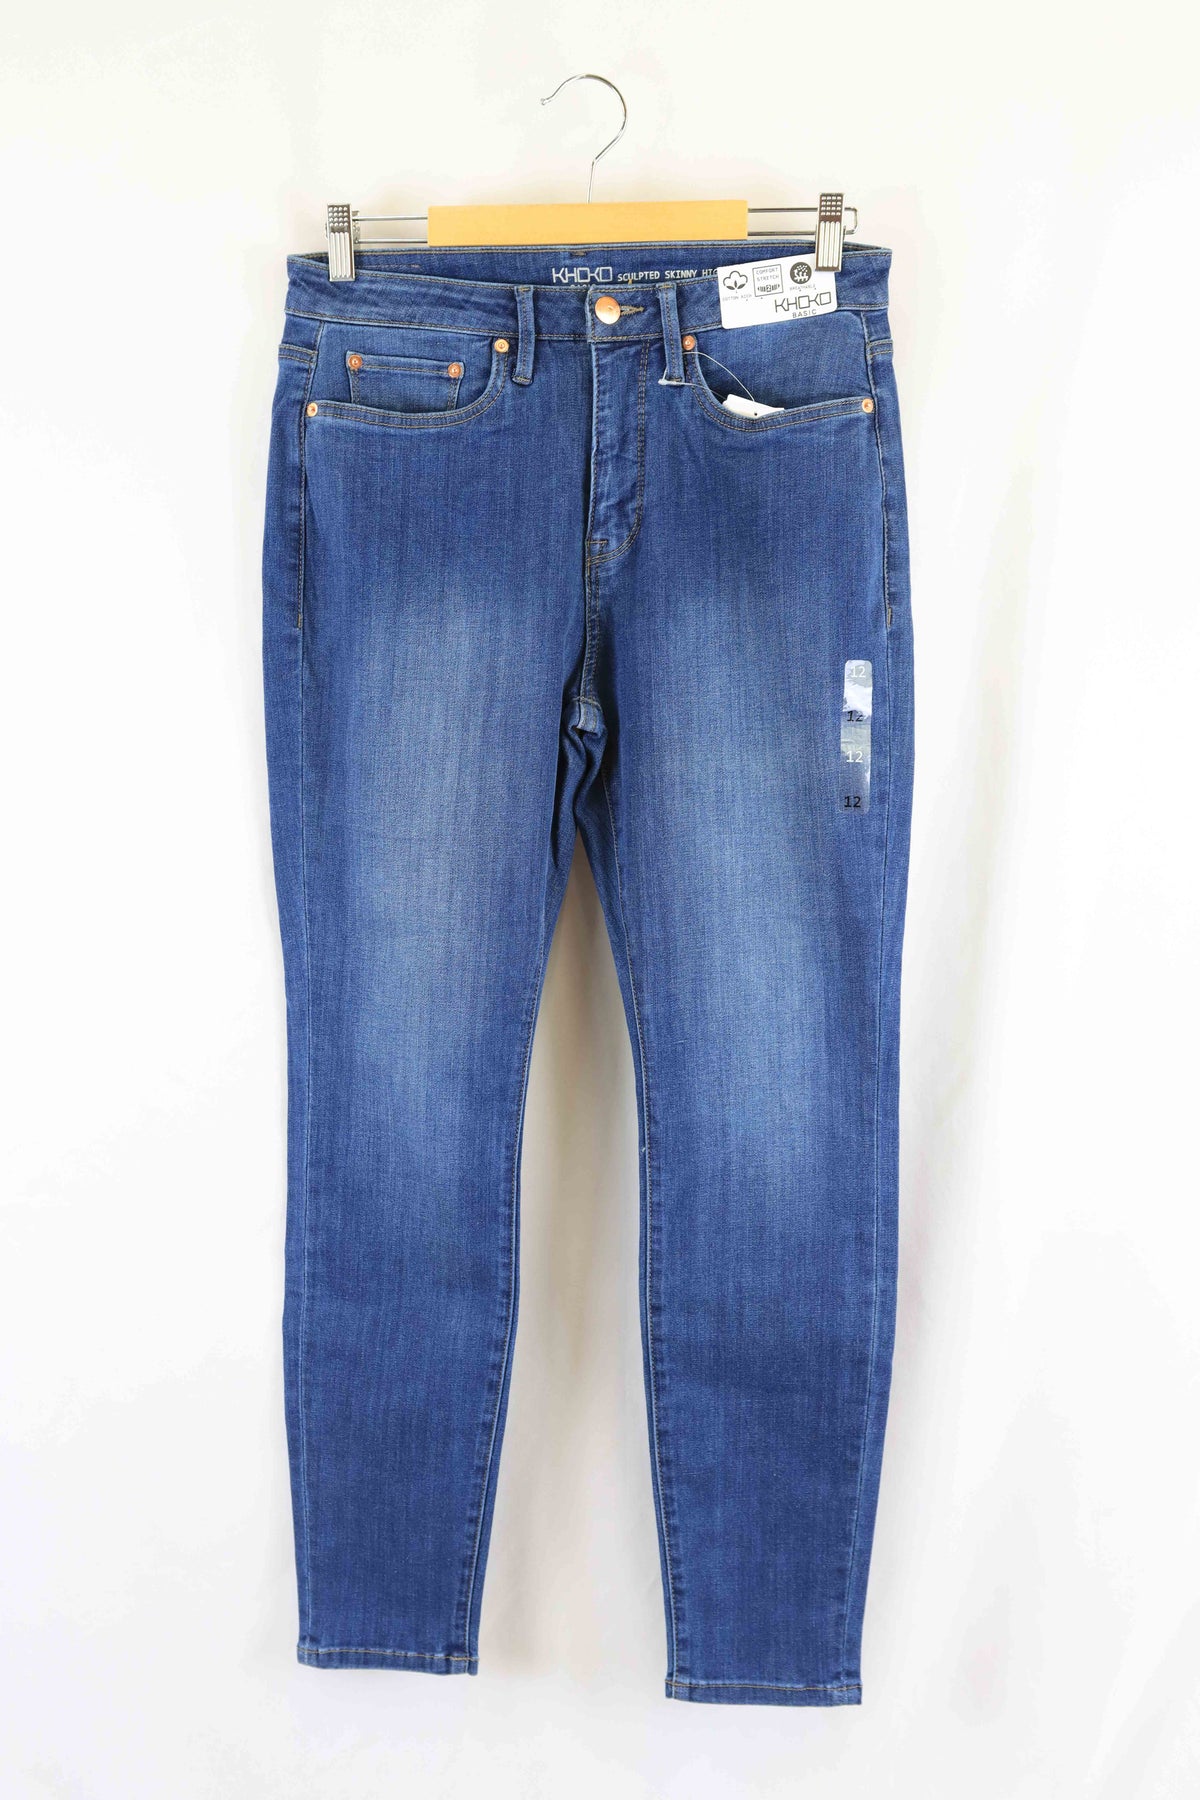 Khoko Denim High Waist Skinny Jeans 12